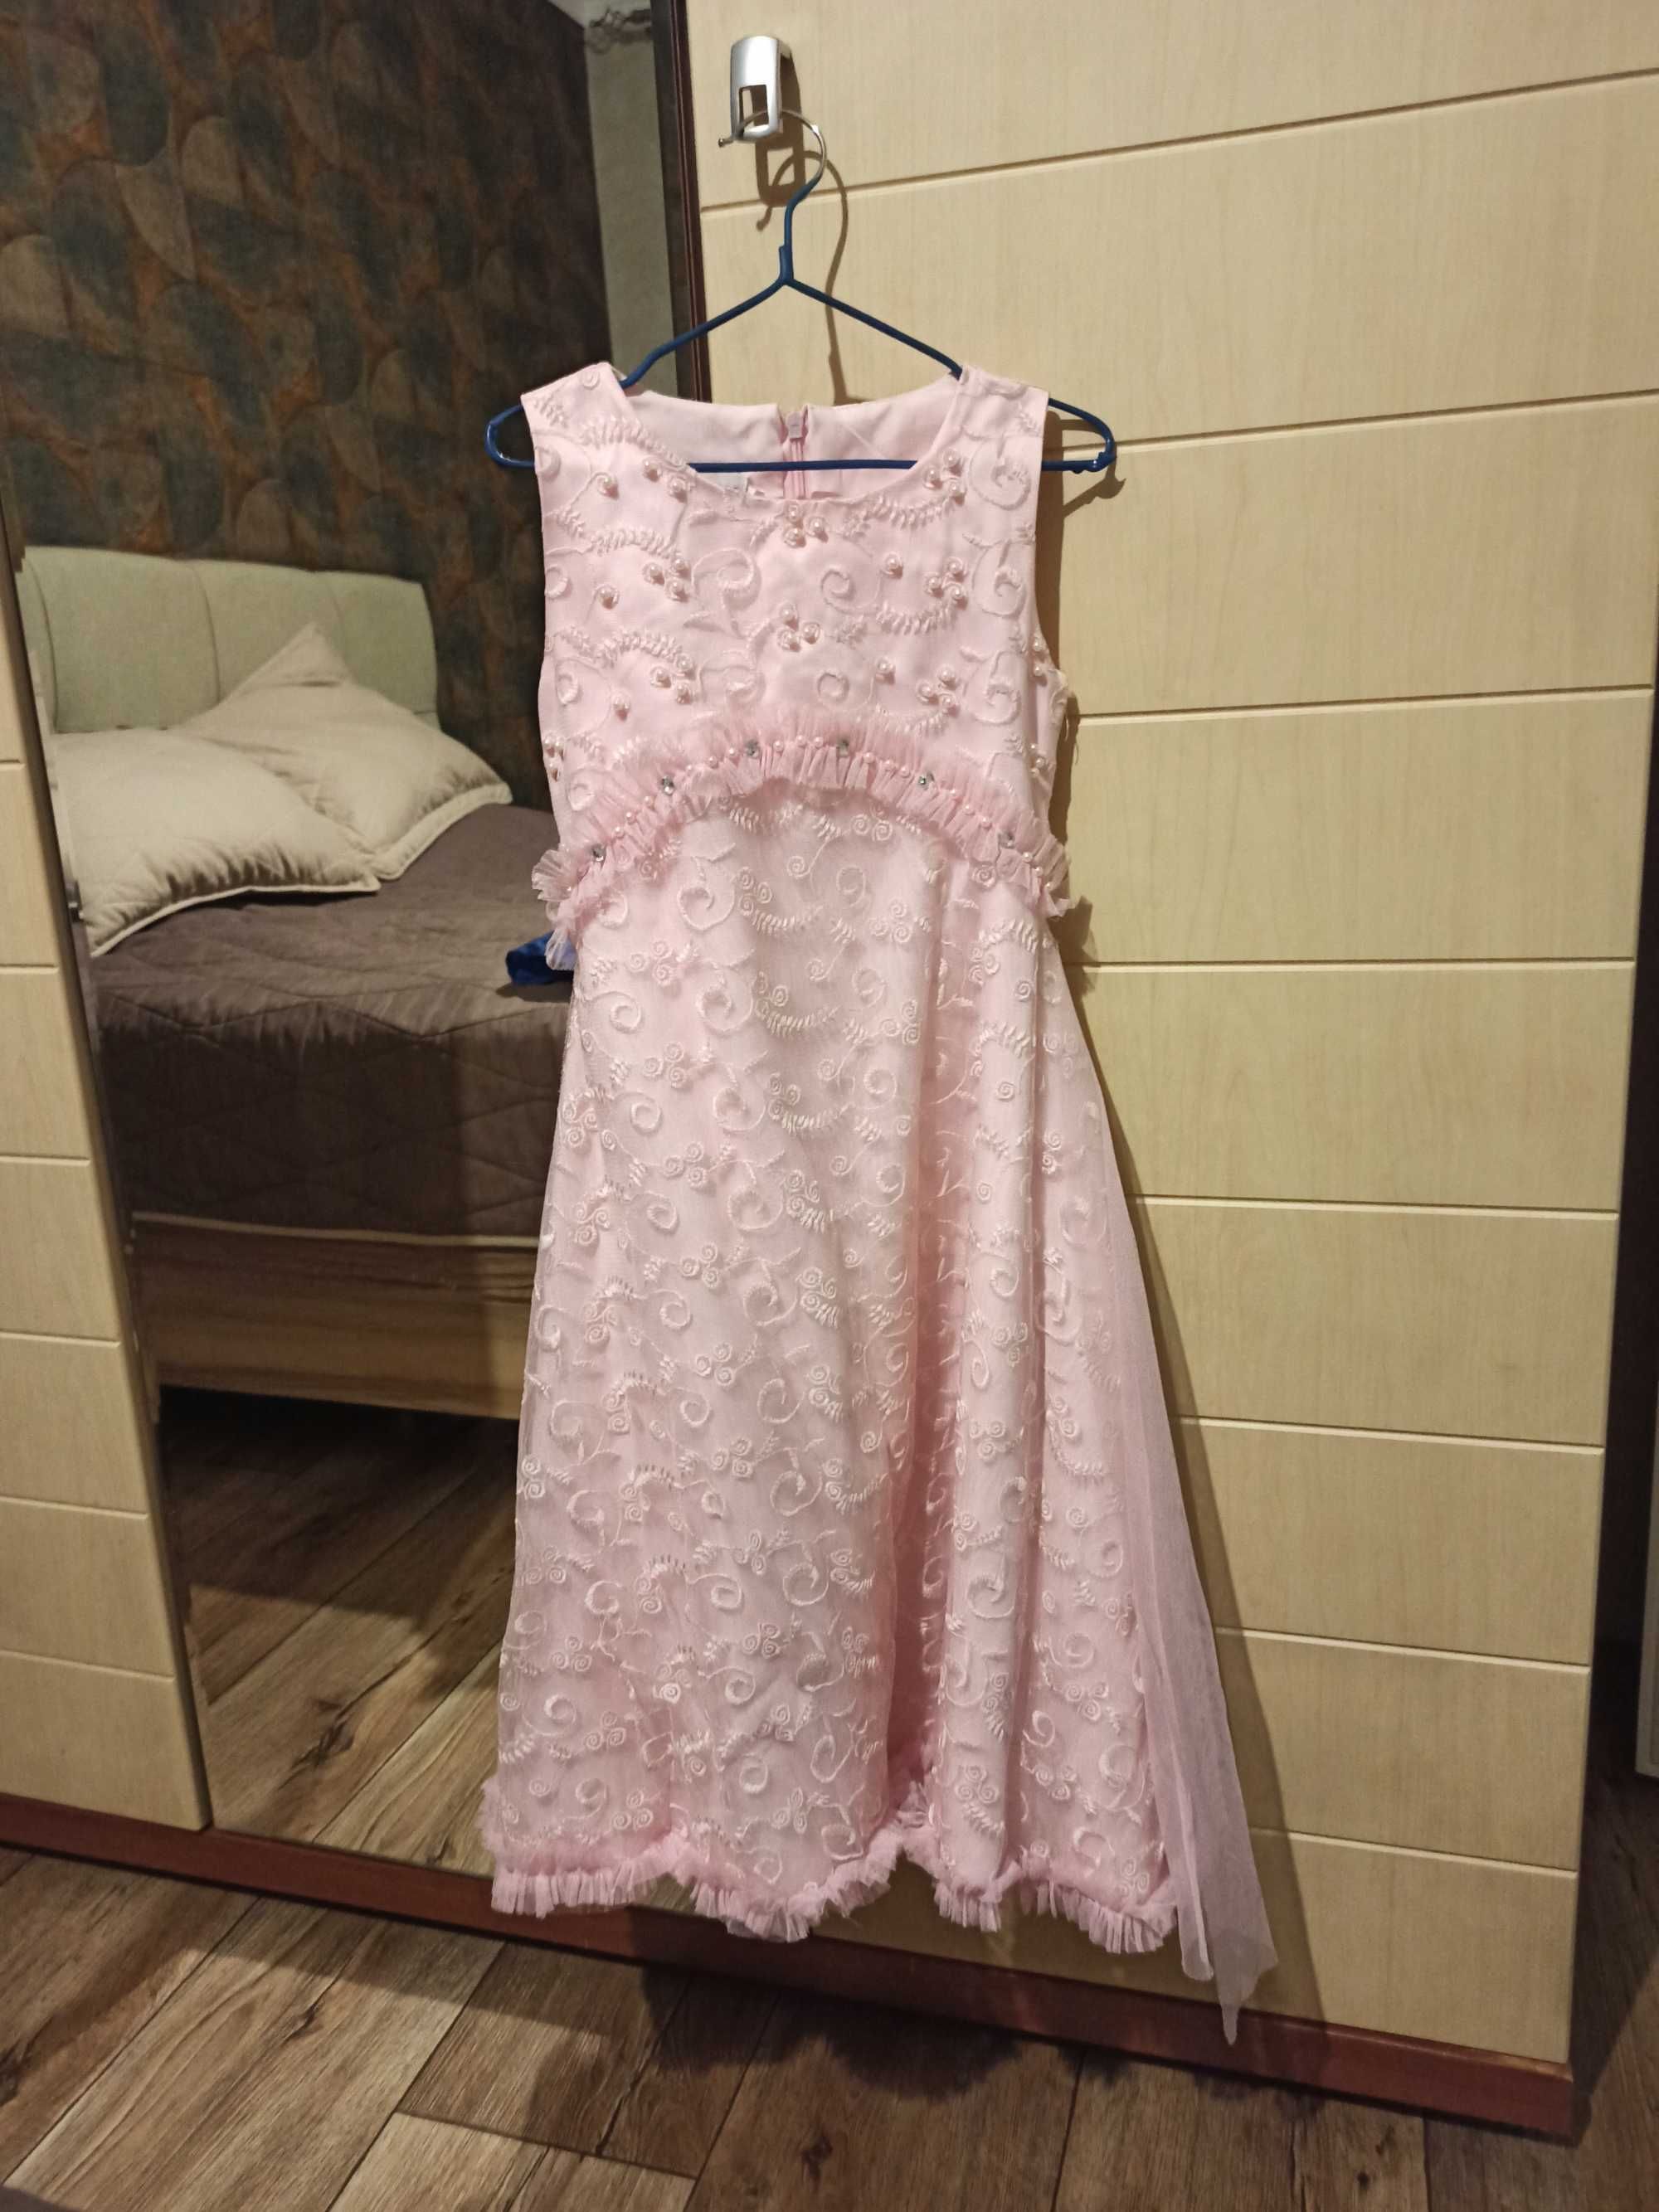 Итальянское Платье нежно розовое, вышивка бисер.Возраст 6-8 лет.